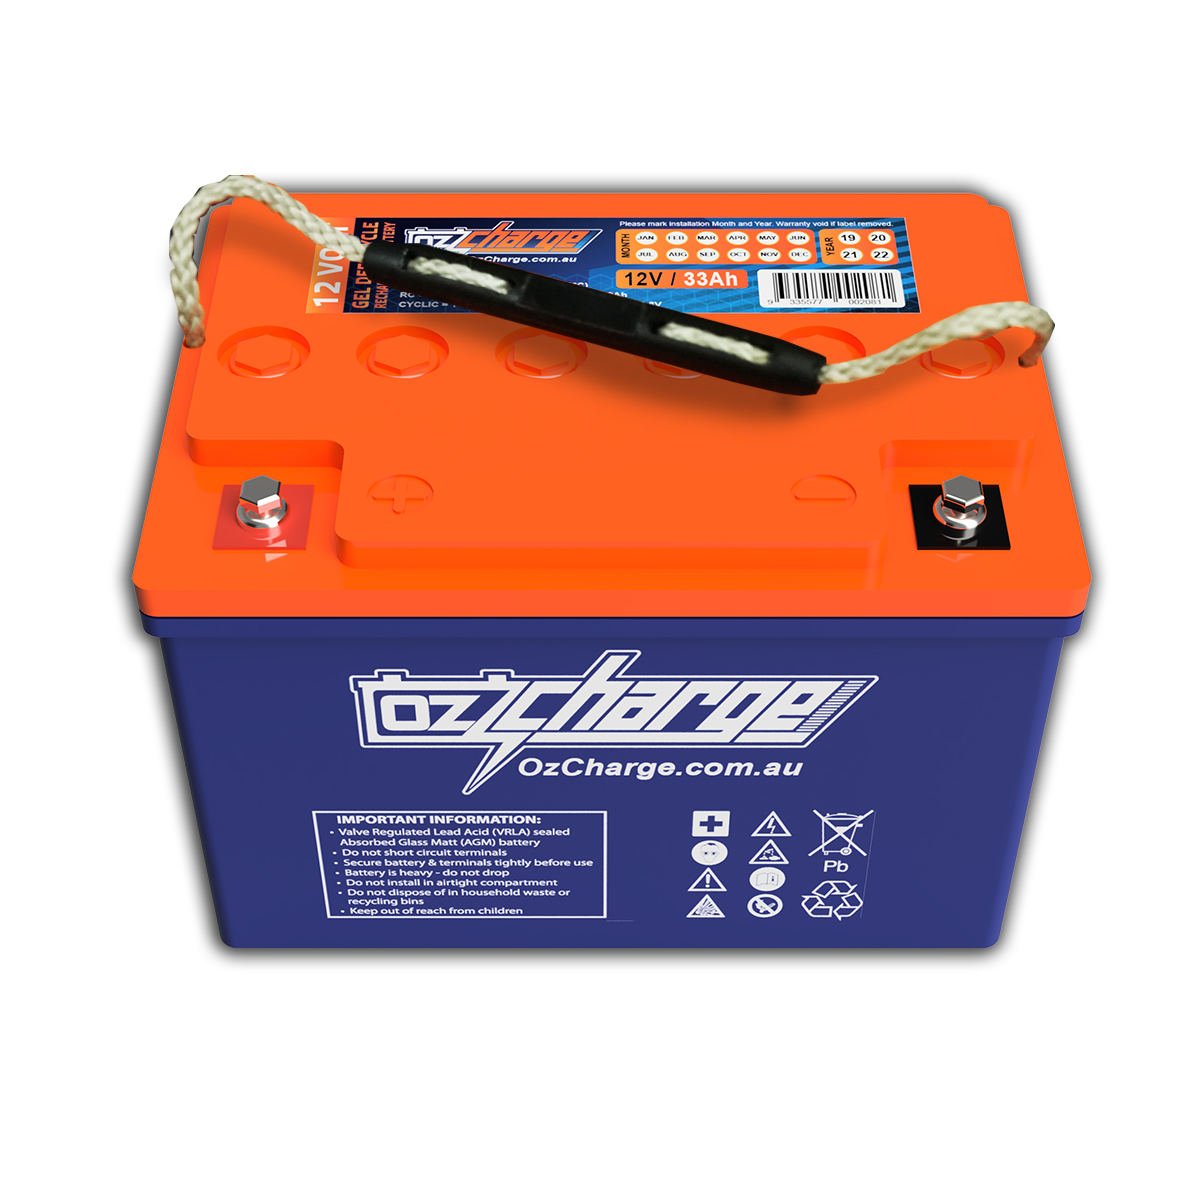 12V 33Ah GEL Deep-Cycle Battery